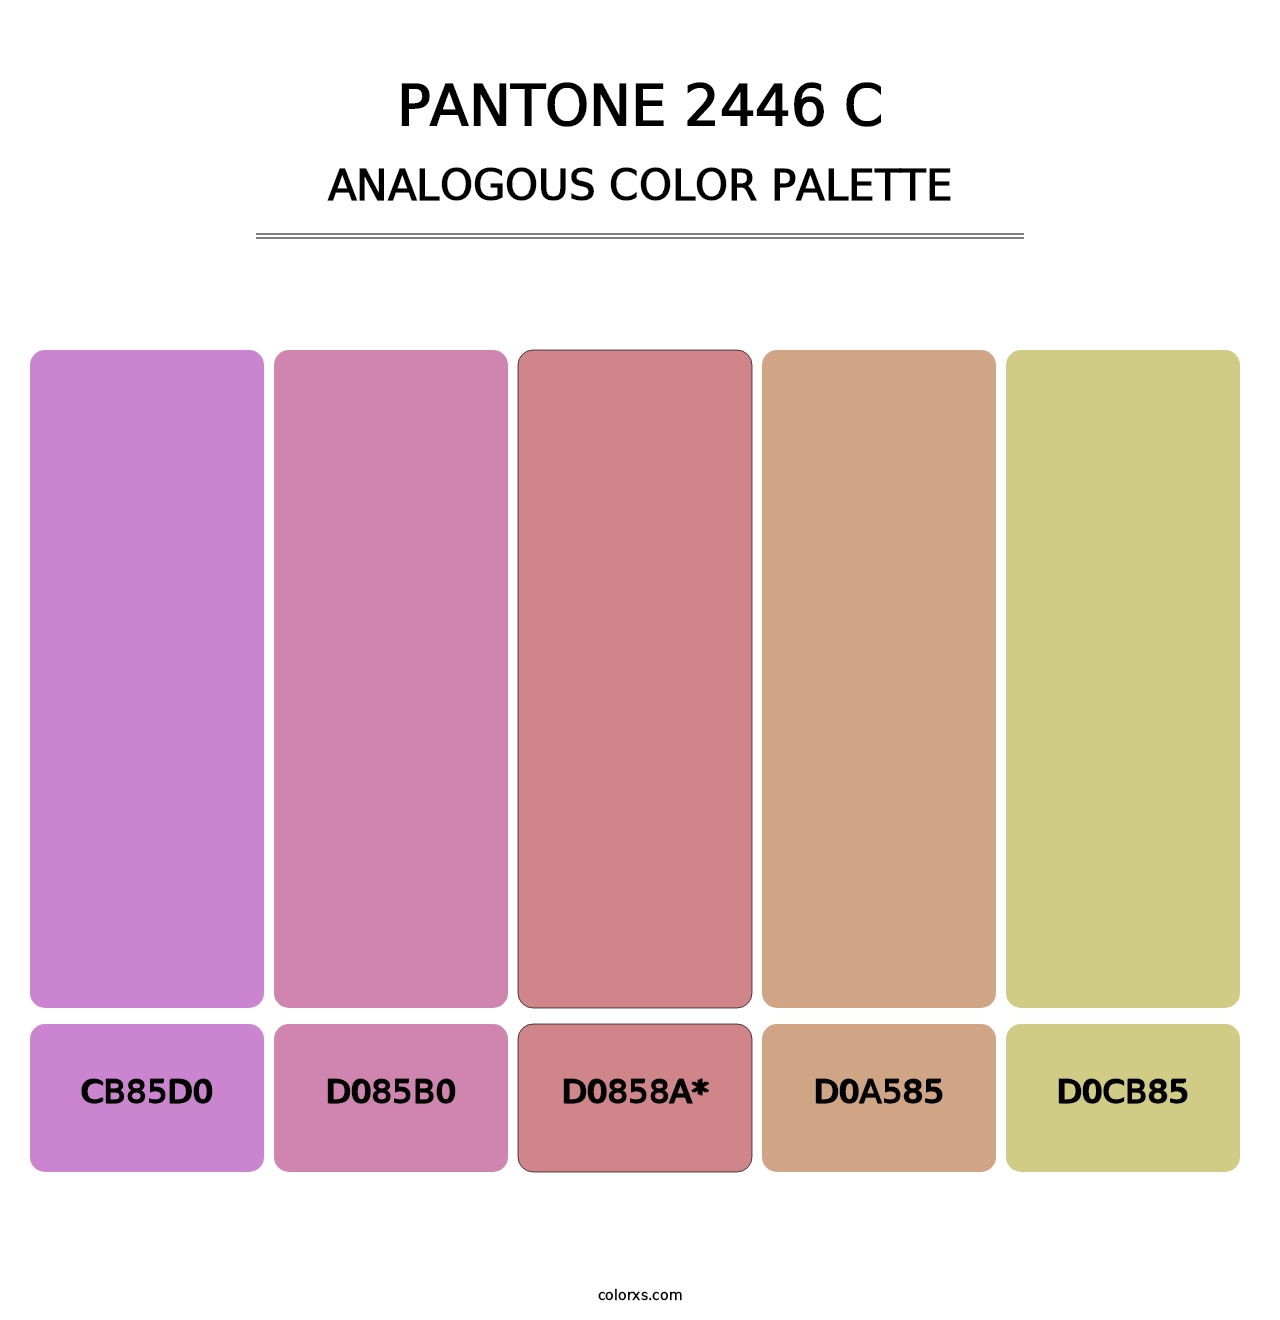 PANTONE 2446 C - Analogous Color Palette